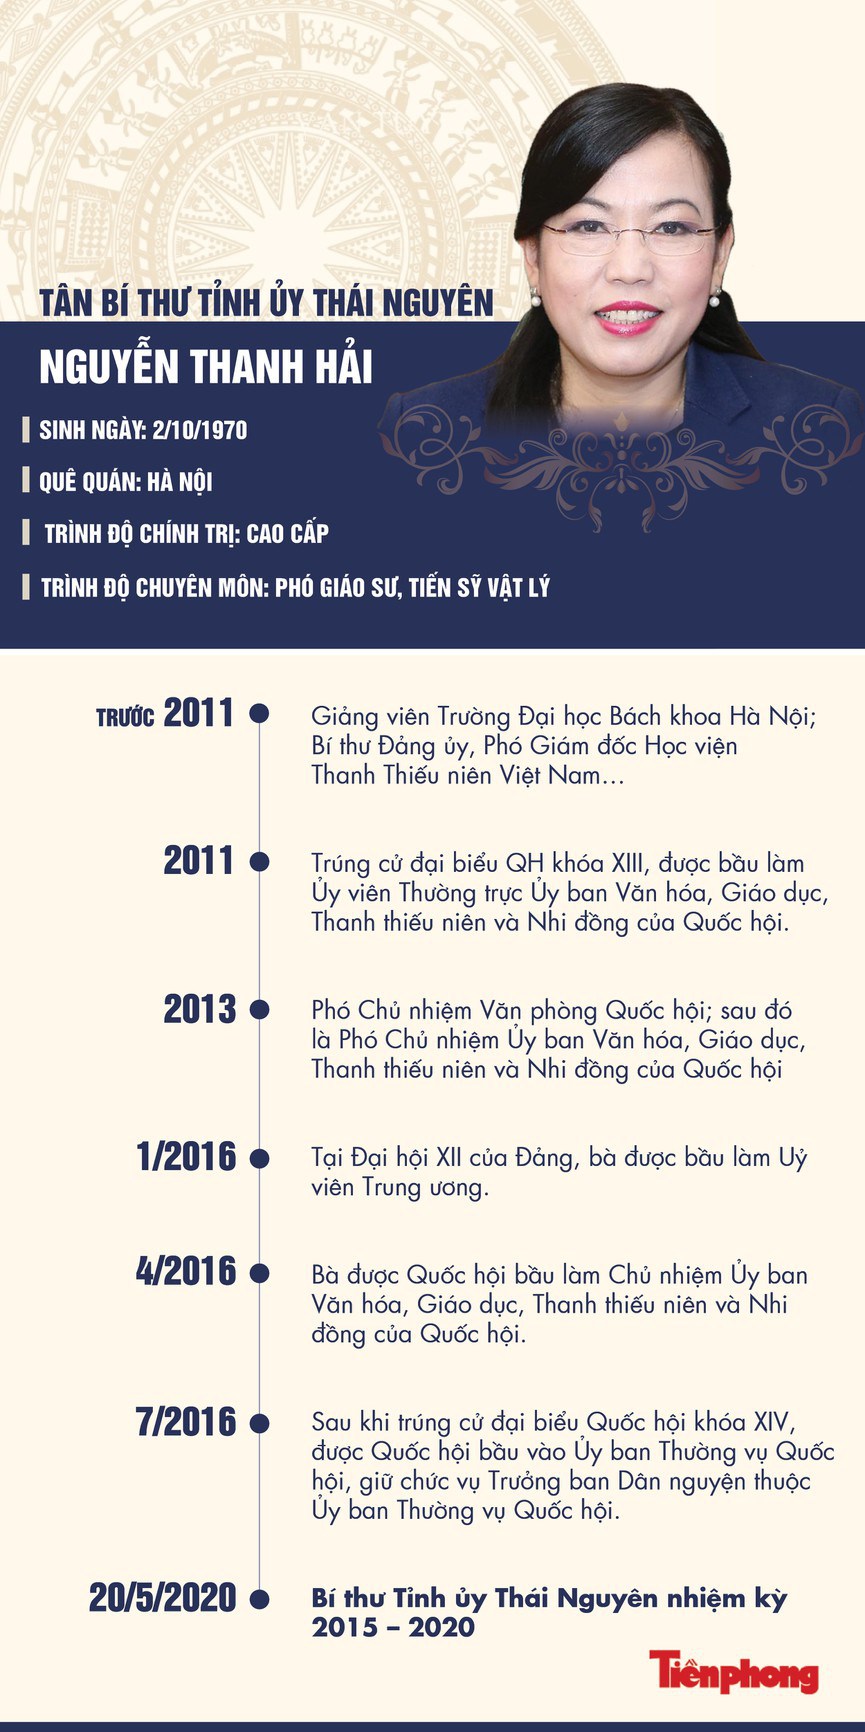 Chân dung tân Bí thư Tỉnh uỷ Thái Nguyên Nguyễn Thanh Hải - Ảnh 1.